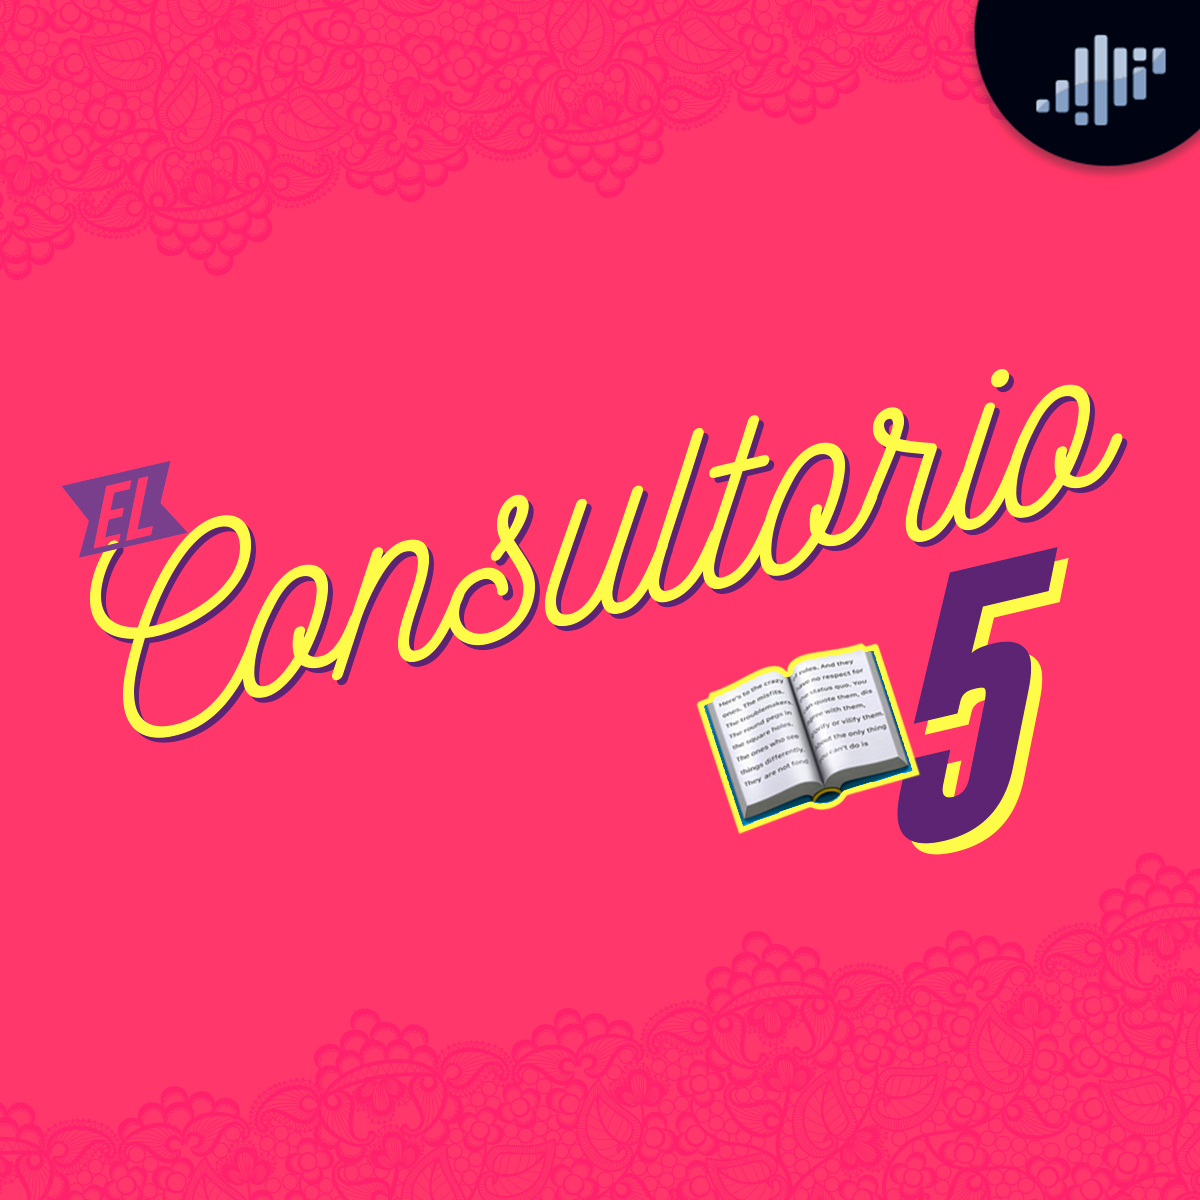 El Consultorio 5 | A Calzón Quita'o